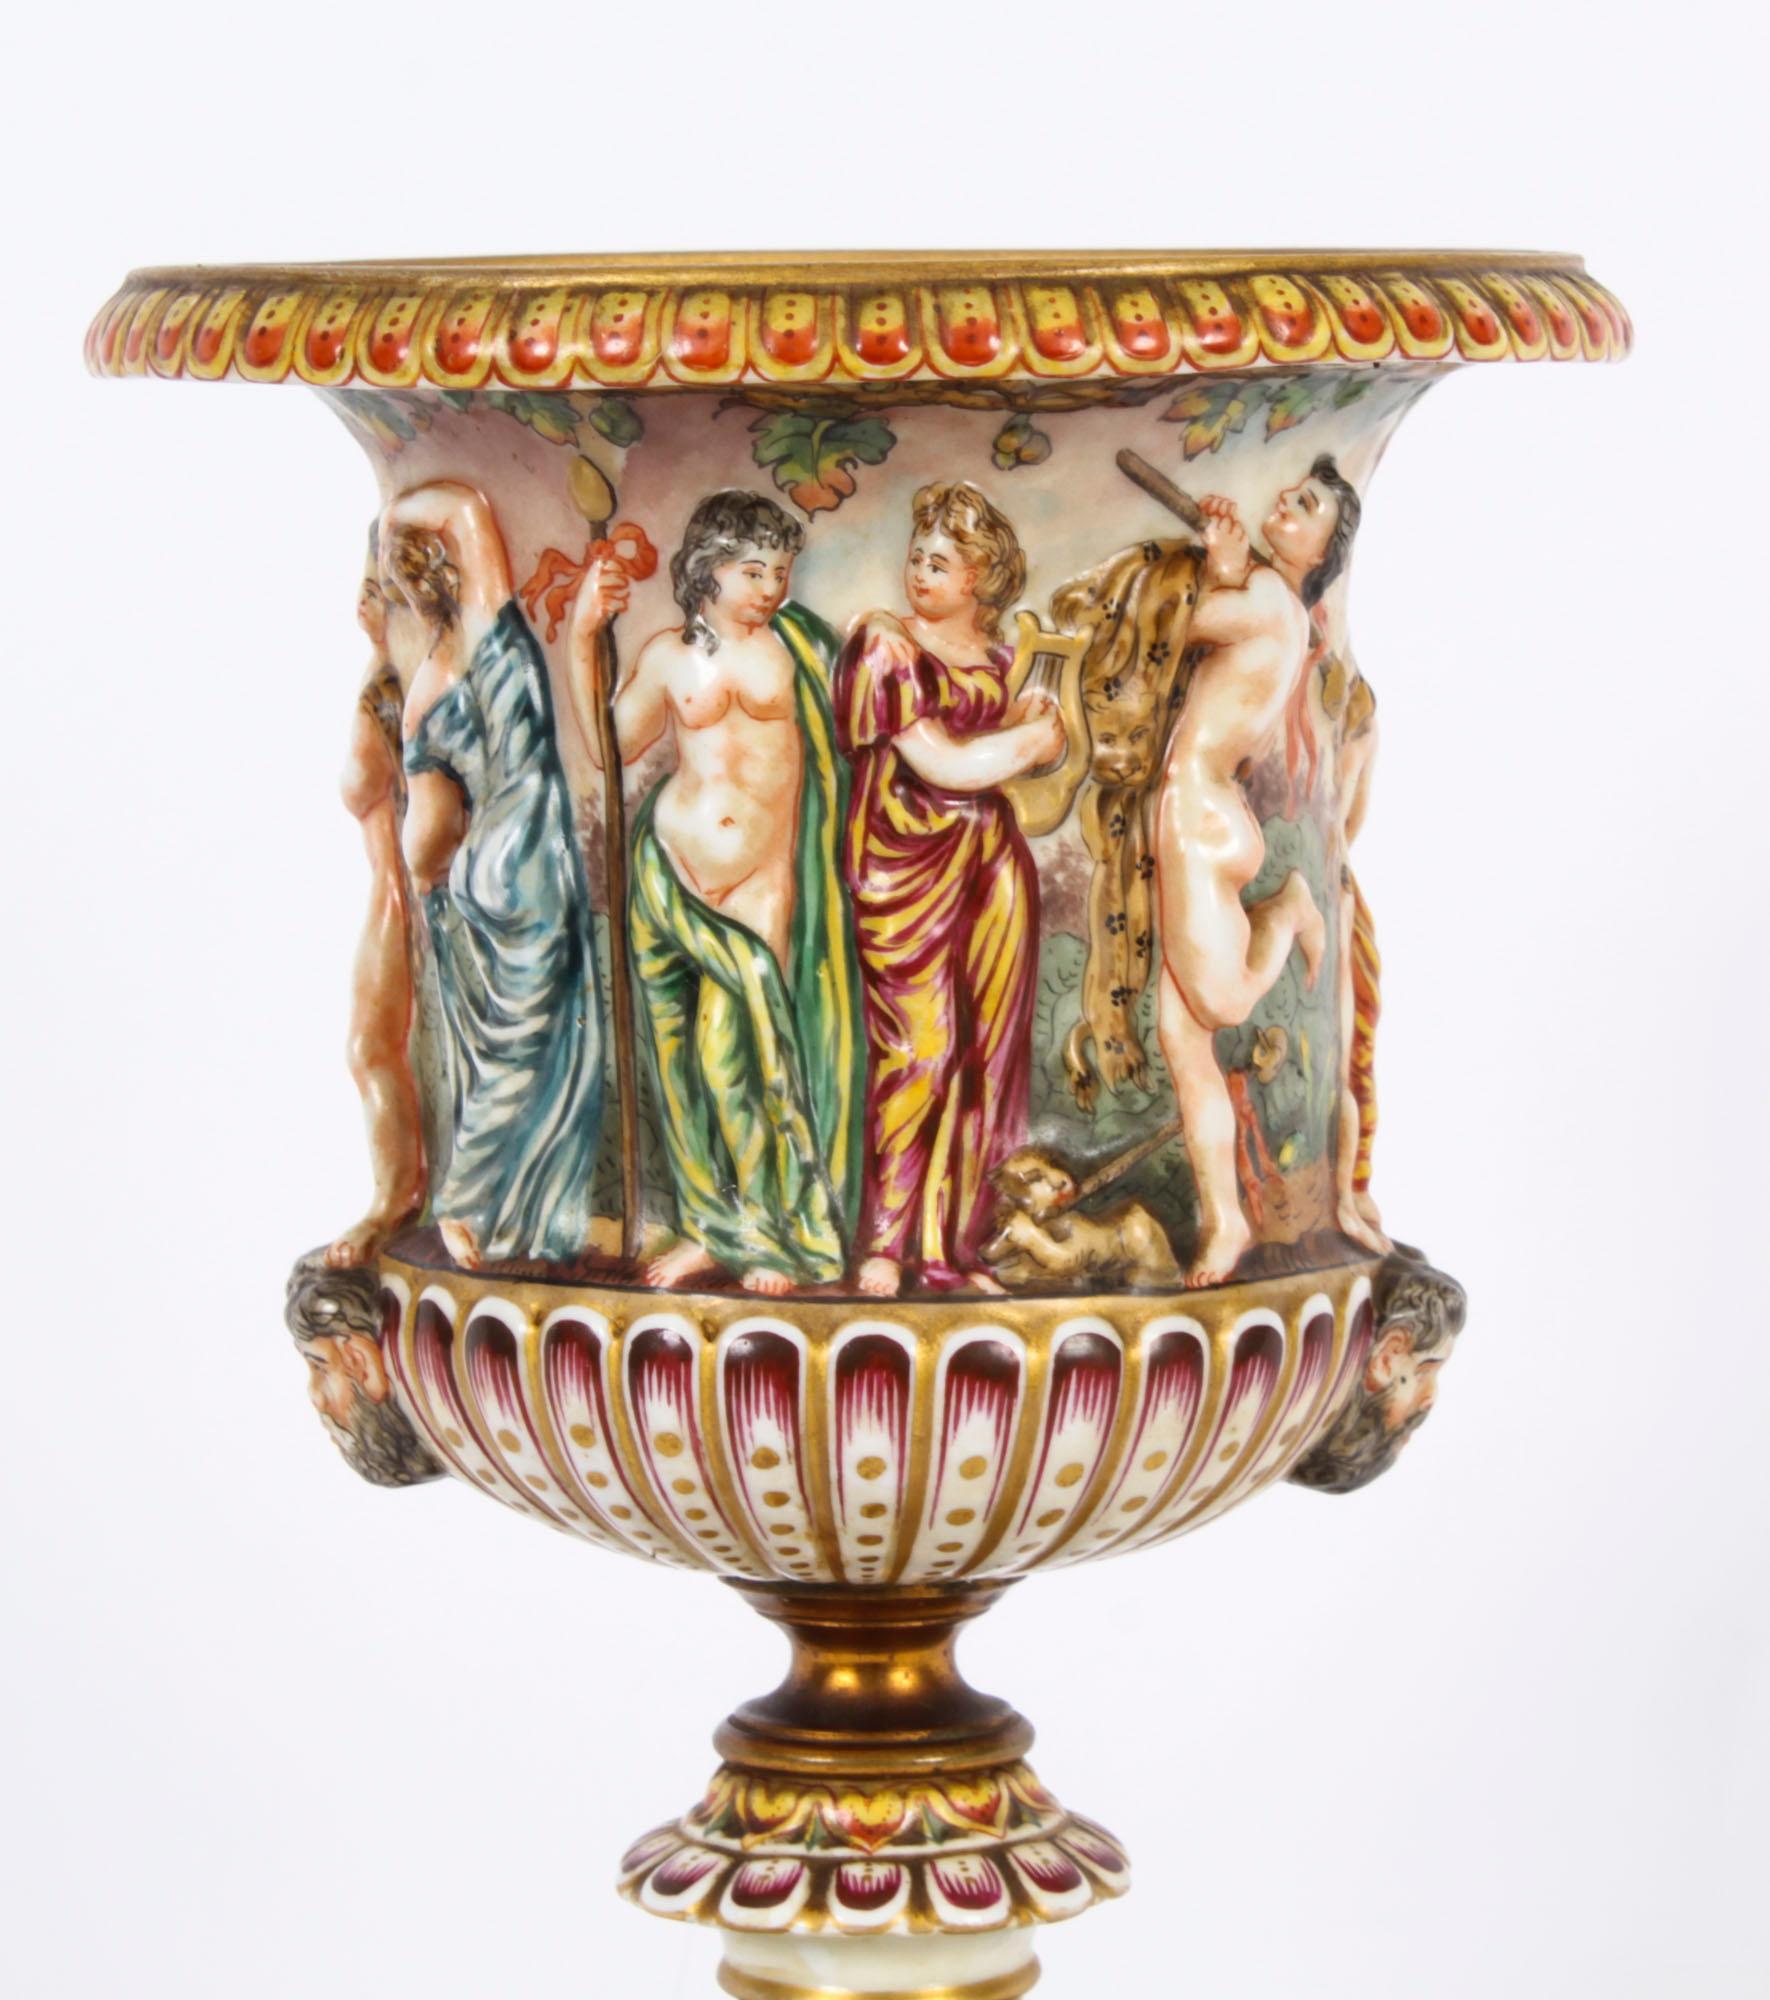 Voici une belle porcelaine italienne ancienne de Naples Capodimonte.  urne, datant de la fin du XIXe siècle et portant la signature de Naples Capodimonte en forme de couronne peinte en bleu sur le dessous.

Superbement décorée d'émaux polychromes 